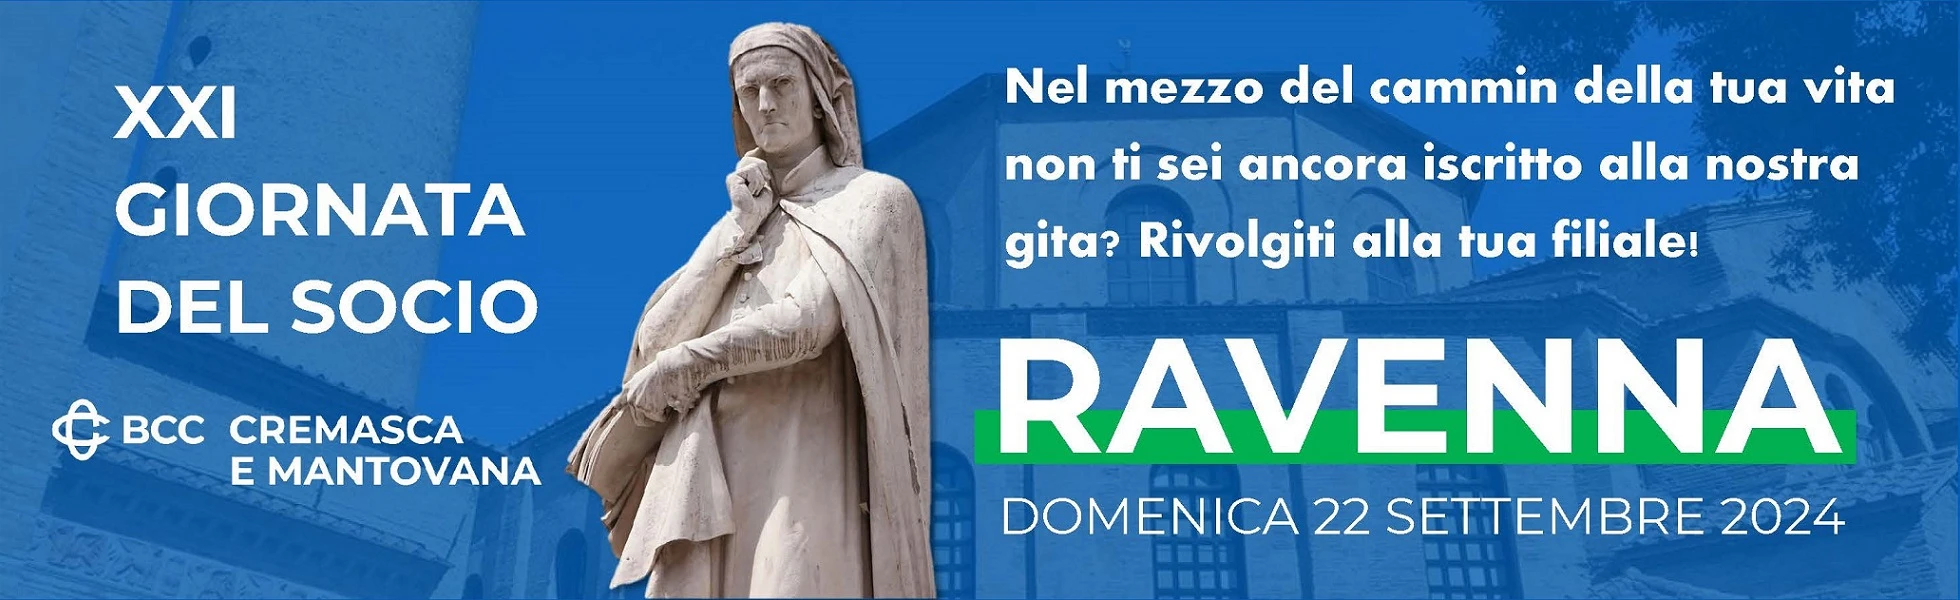 GitaSocio_Ravenna